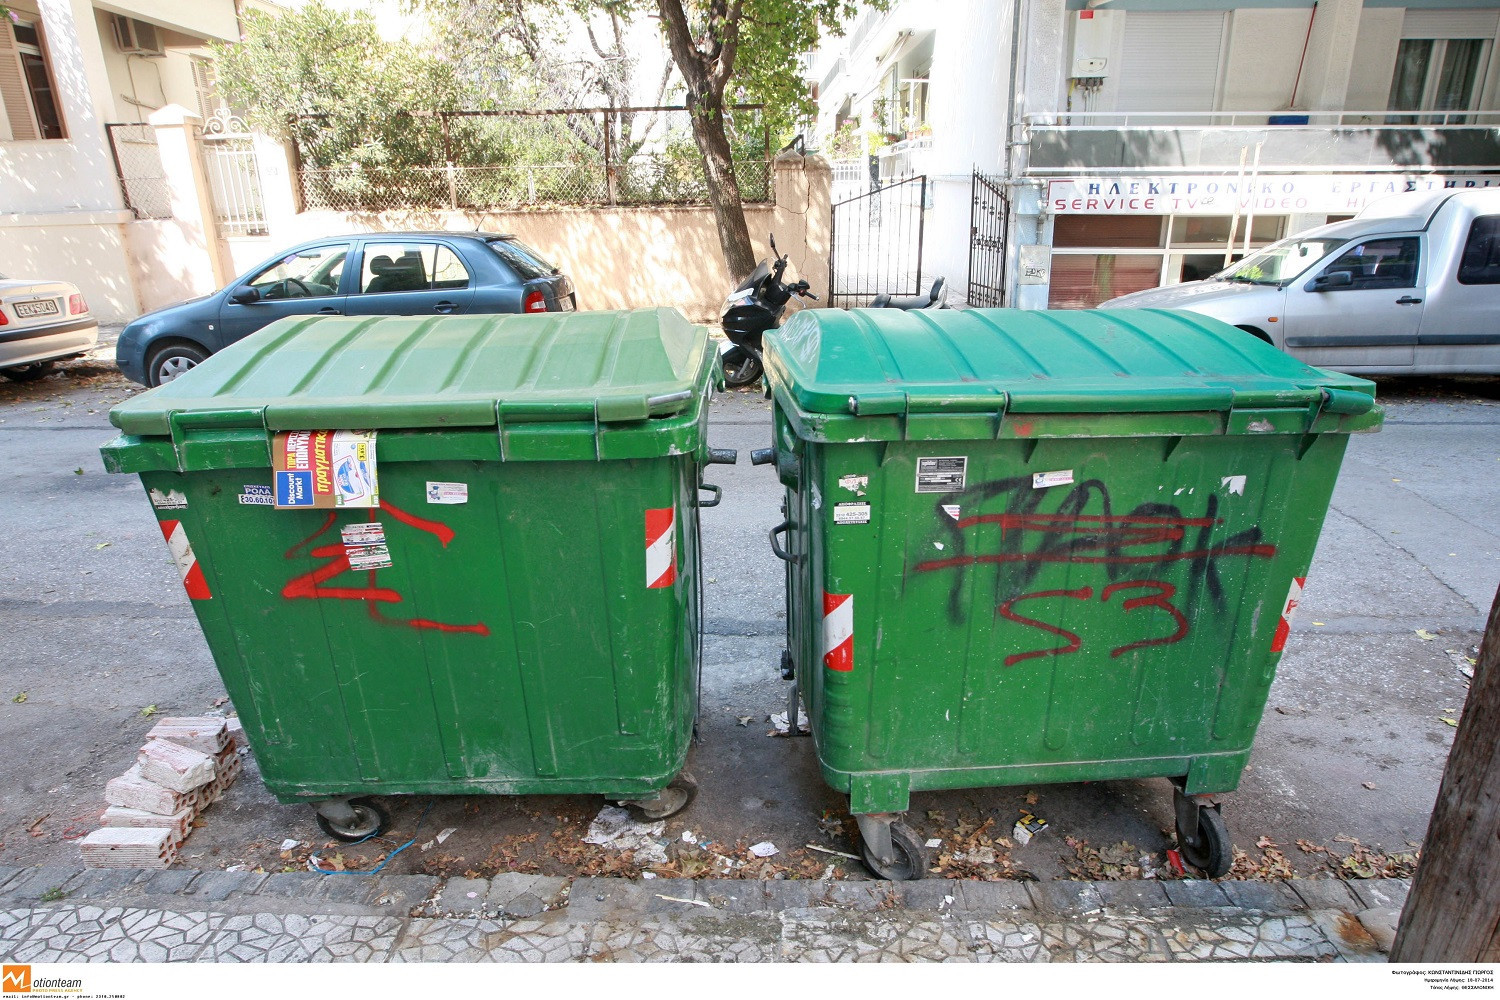 ΥΠΕΝ: Οδηγίες για τη διαχείριση απορριμμάτων – “Δεν ανακυκλώνουμε τον κορωνοϊό” (vid)